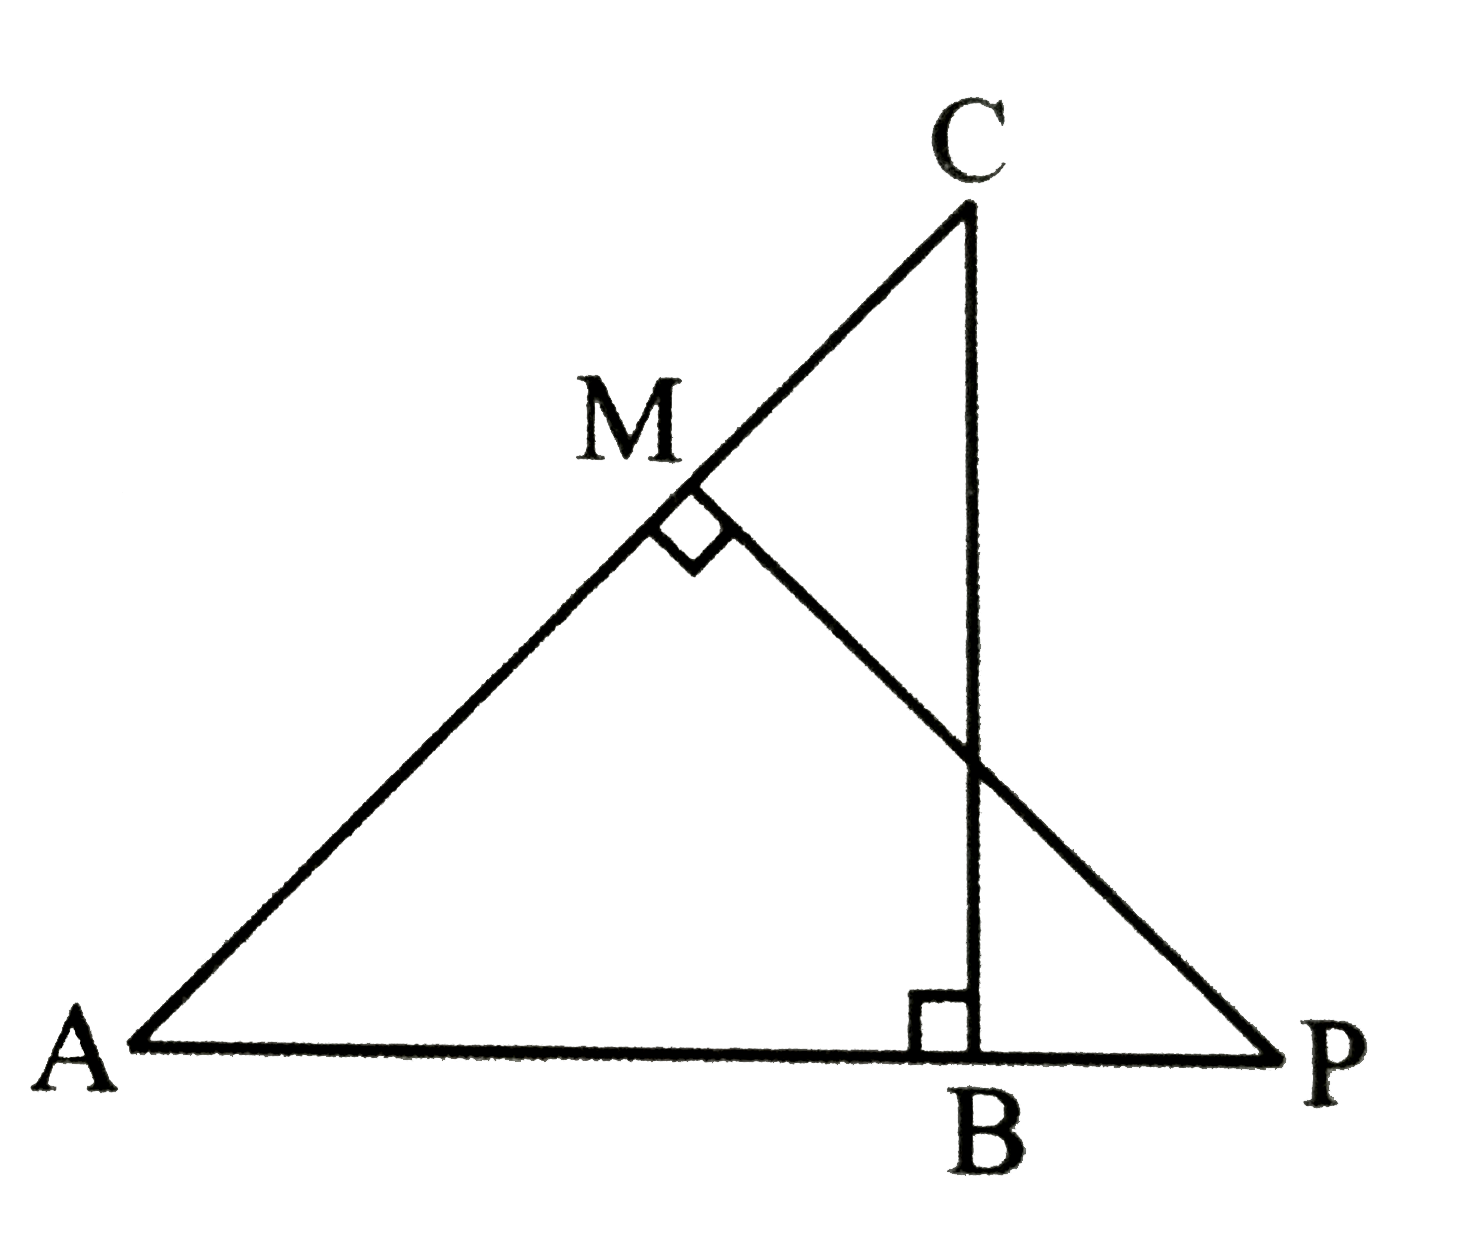 दी गई आकृति में, triangle ABC  तथा triangle AMP क्रमशः Bतथा M पर समकोण है तो सिद्ध कीजिए कि,    (i) triangle ABC ~ triangle AMP   (ii) (CA)/(PA) = (BC)/(MP)